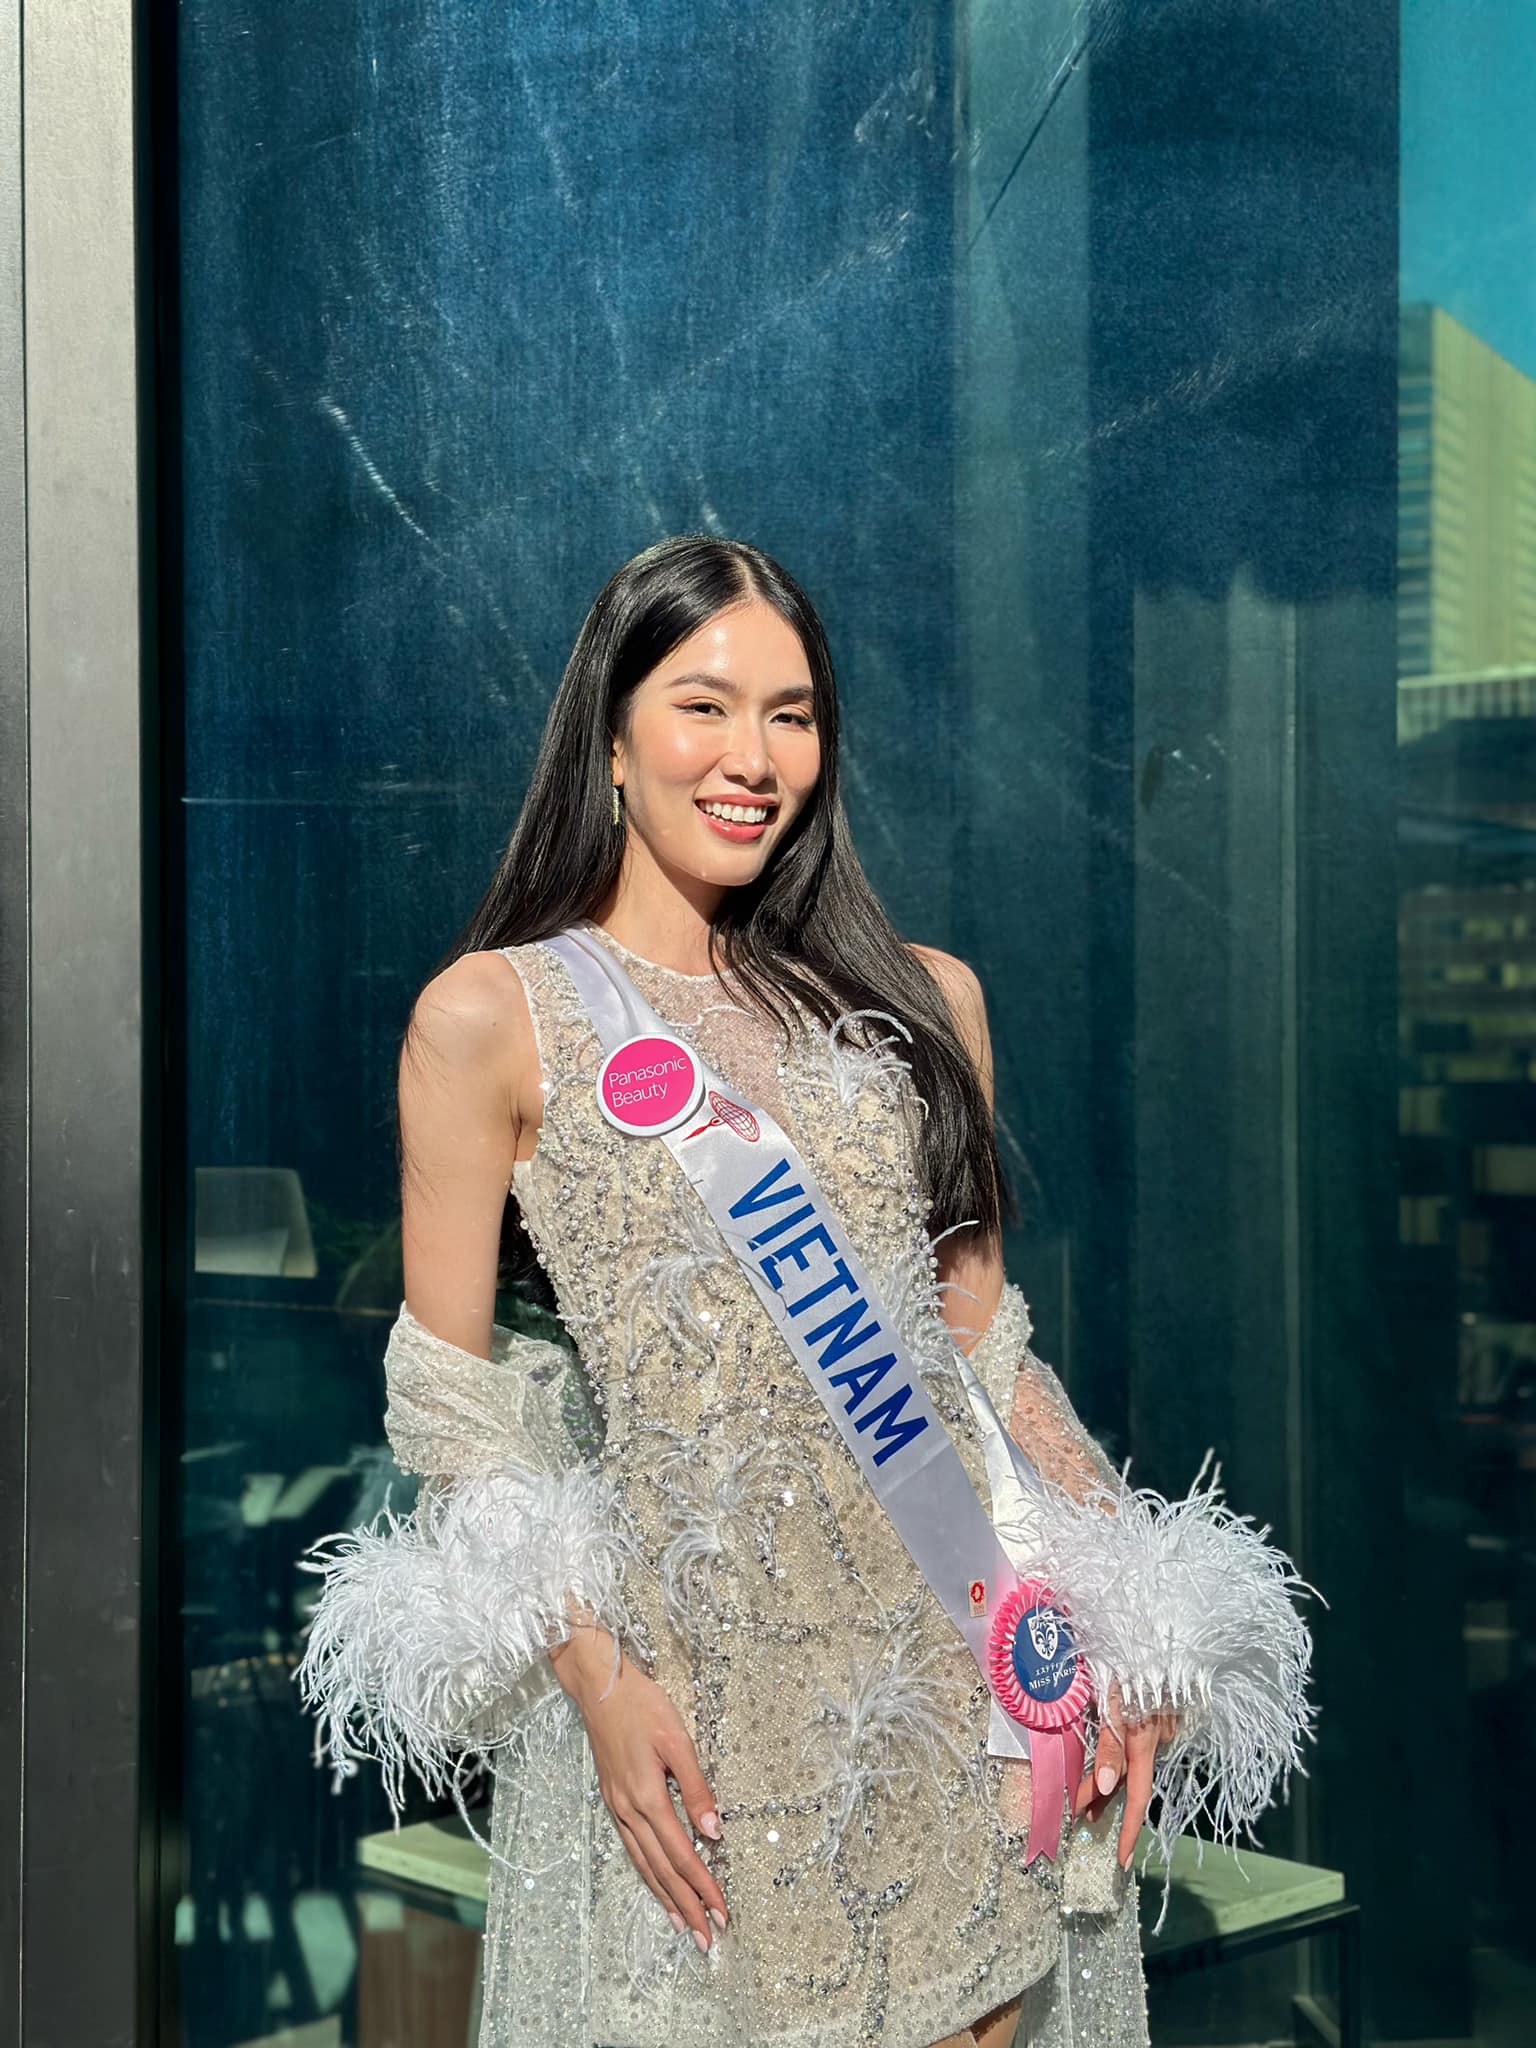 Chuyên trang Missosology dự đoán Phương Anh lọt Top 10 Miss International 2022 - Ảnh 2.